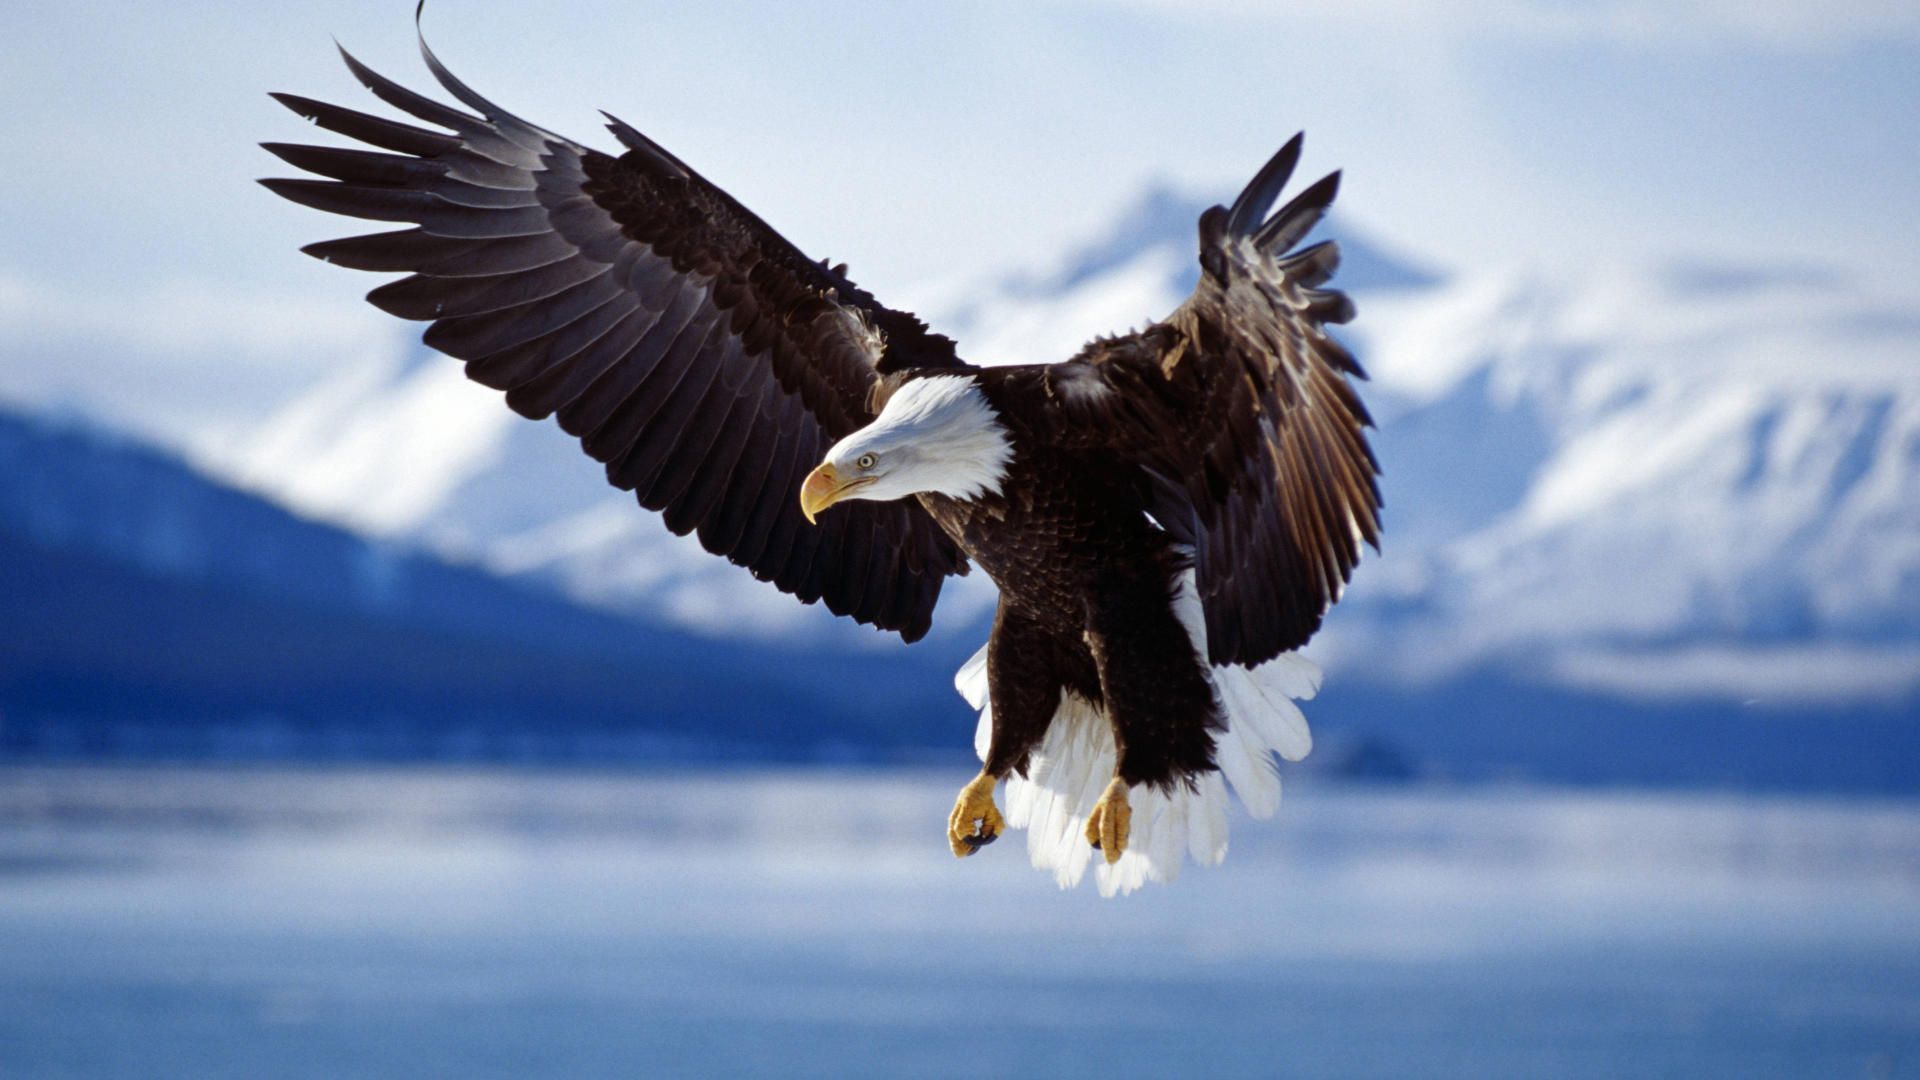 mobile desktop background american bald eagle wallpaper